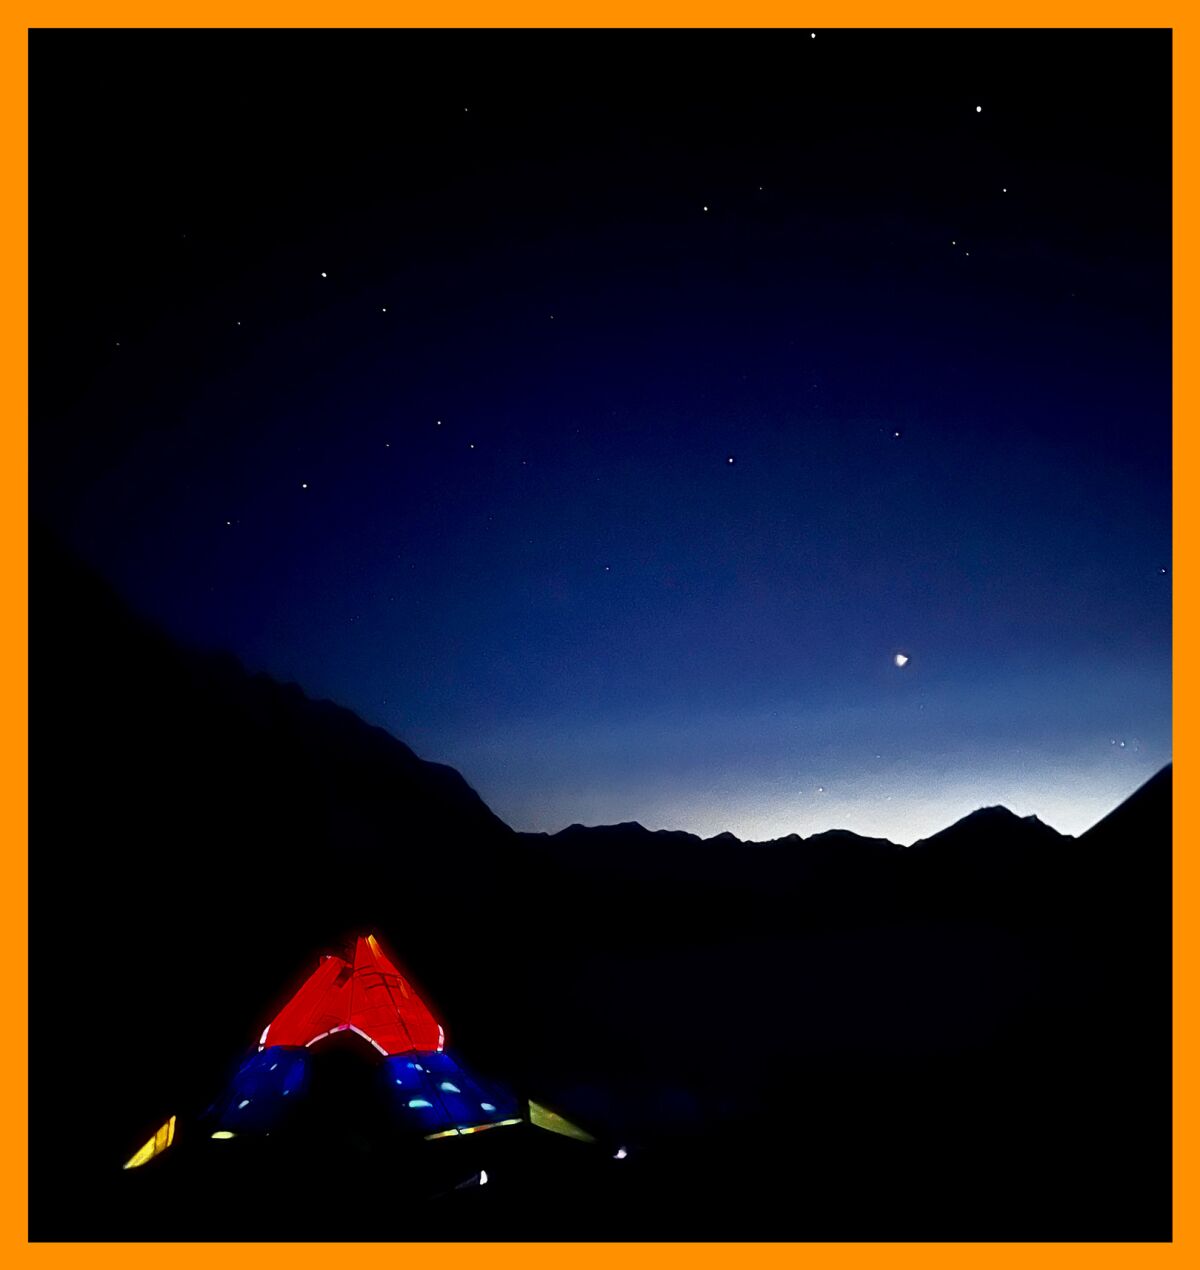 Das Zelt wird von innen vor dem sternenklaren Nachthimmel beleuchtet.